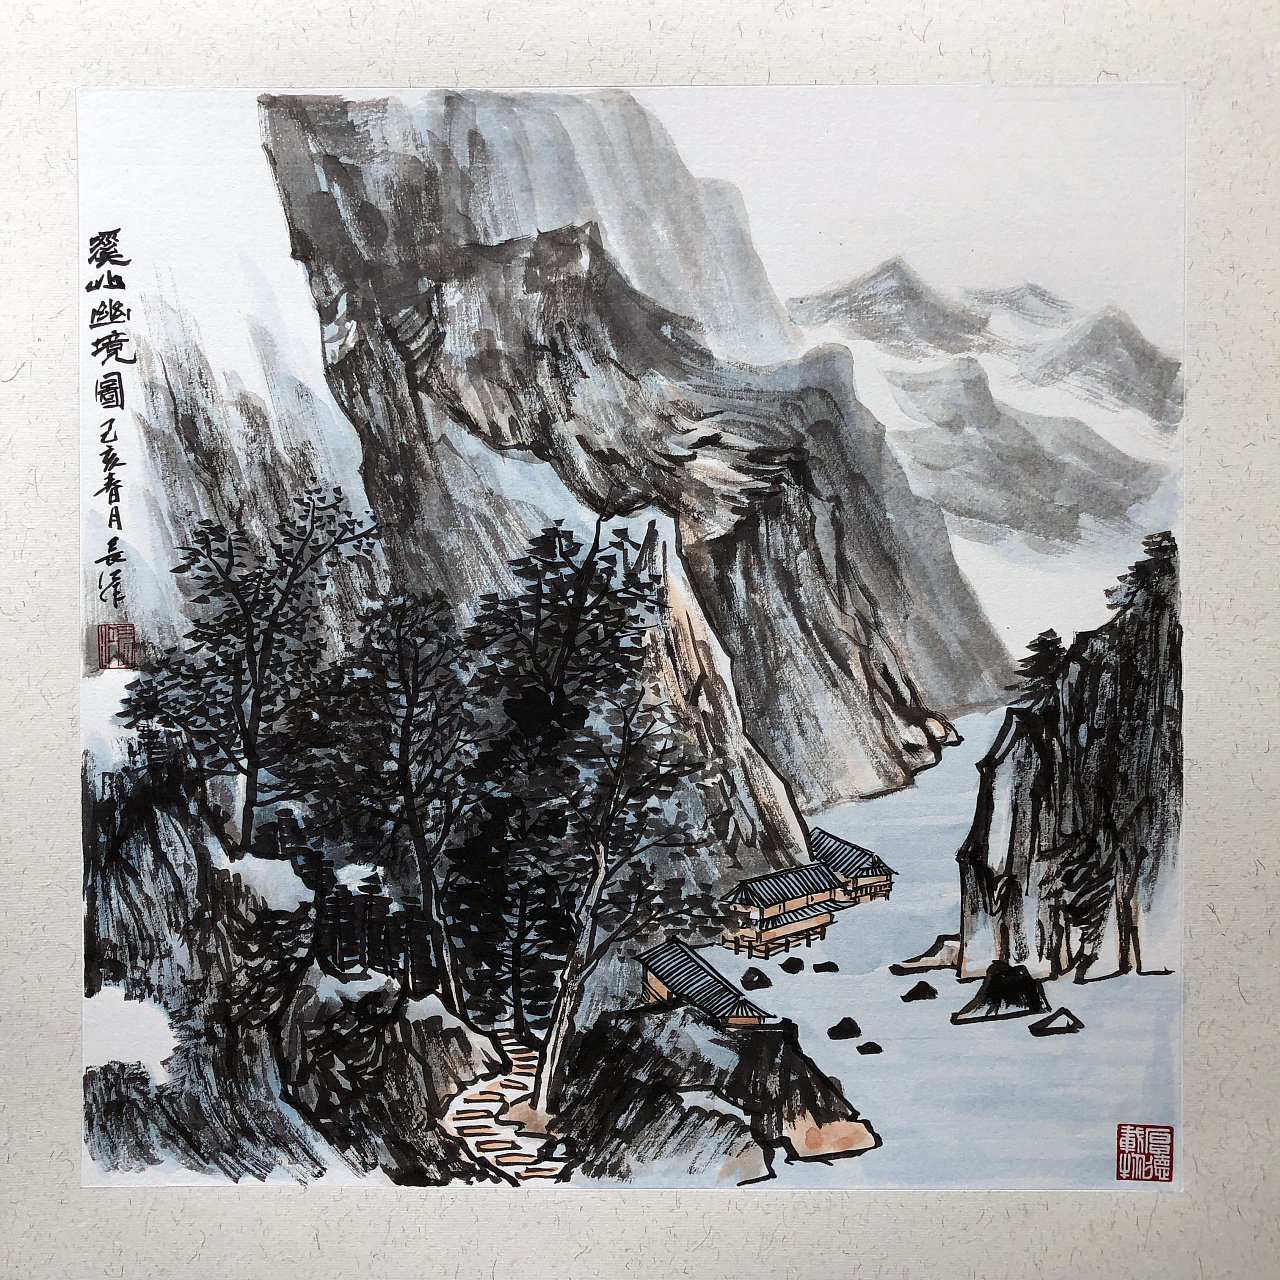 著名中国山水画家王岳岗作品欣赏 - 艺术 - 收藏头条